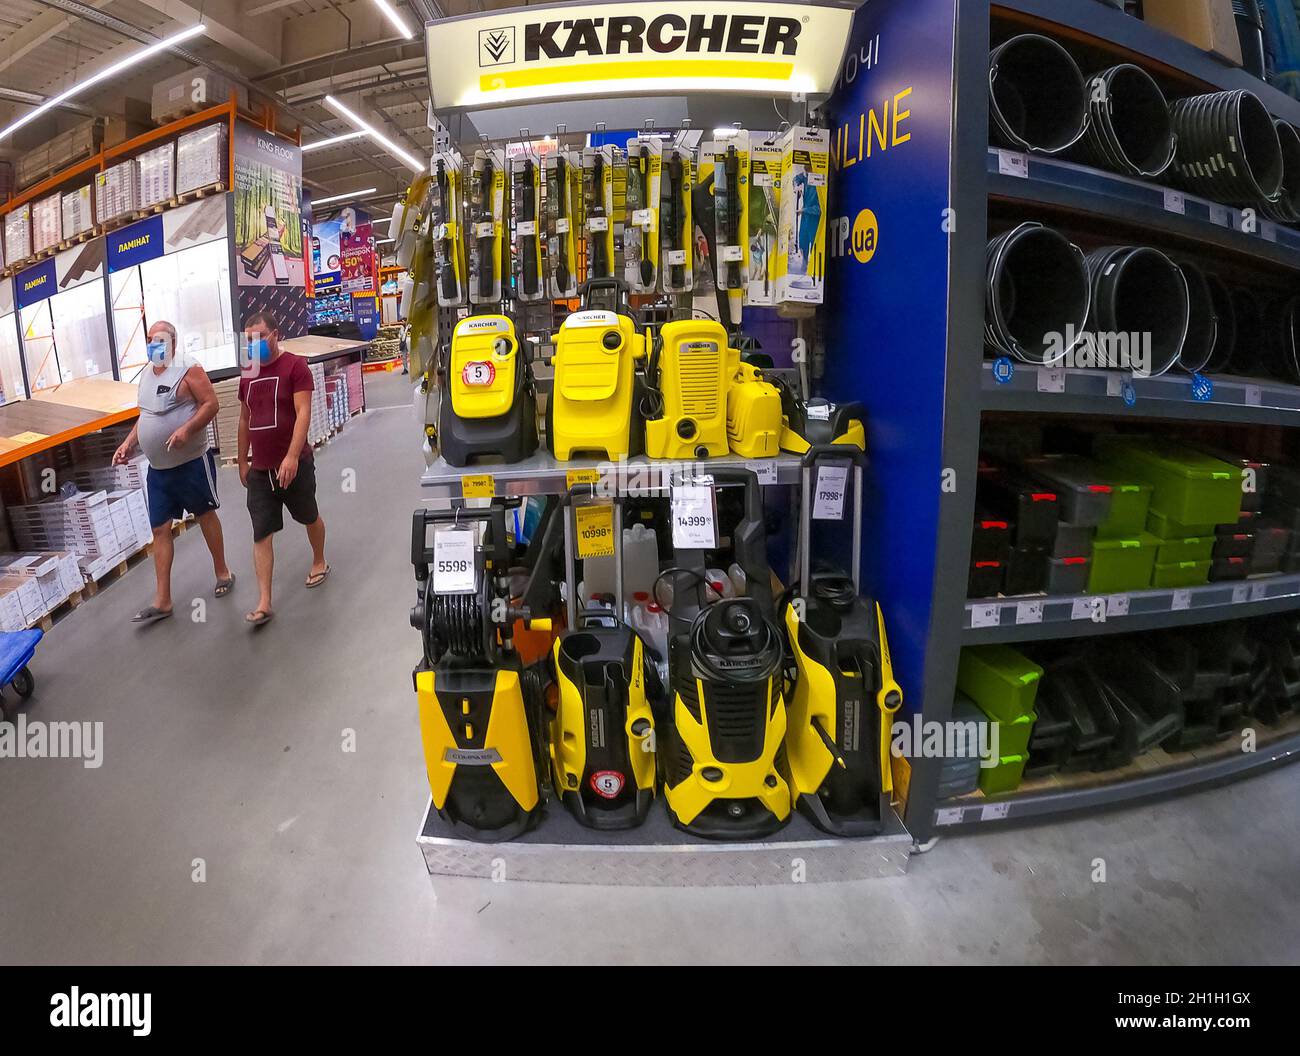 Kiev, Ukraine - 16 août 2020 : matériel et outils Karcher au magasin épicentre de la maison de Kiev, Ukraine, le 16 août Stock - Alamy